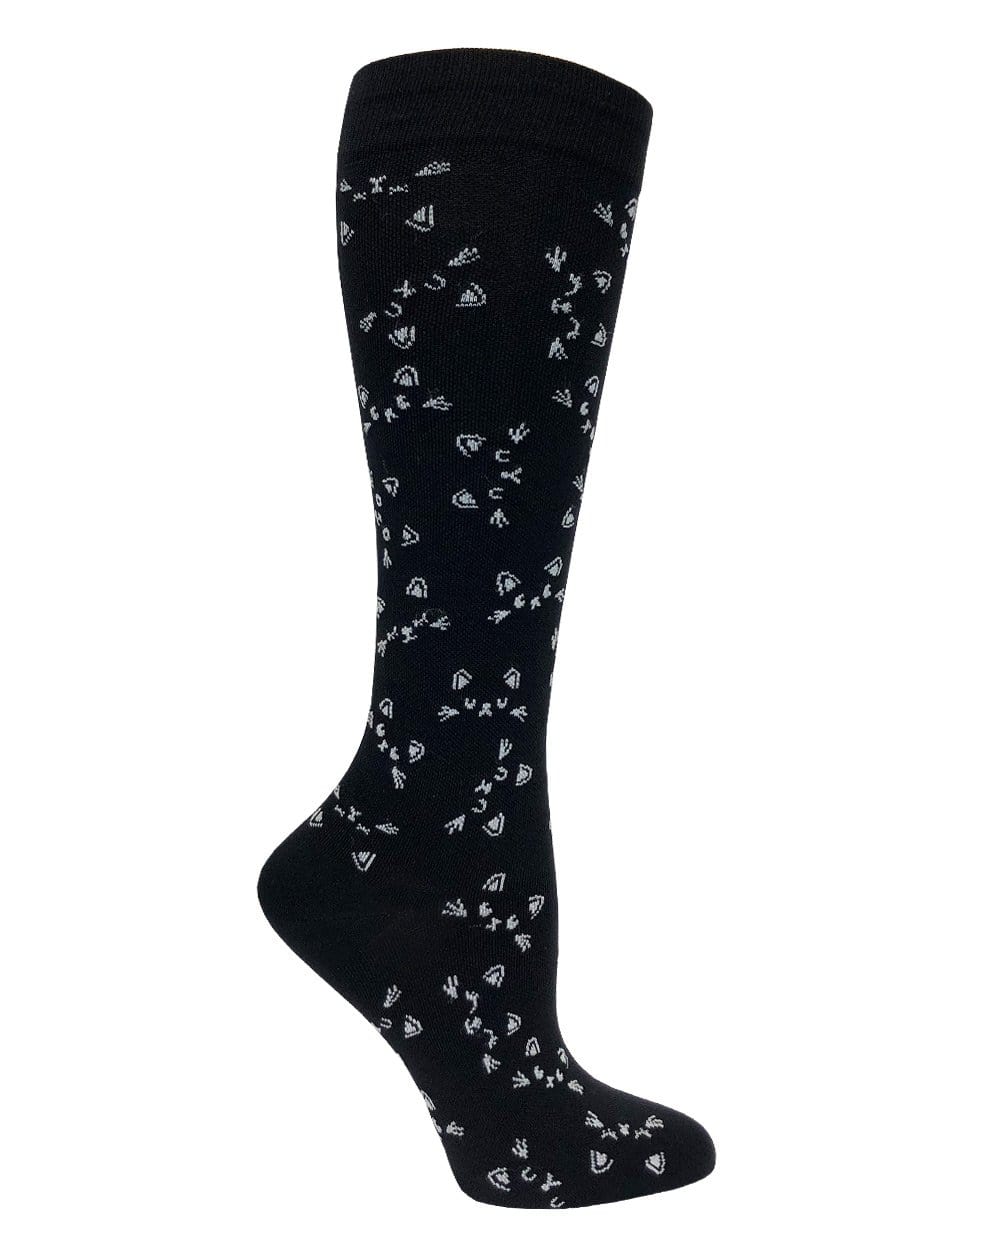 Prestige Medical Socks Cats Black & White Prestige 30cm Premium Knit Compression Socks